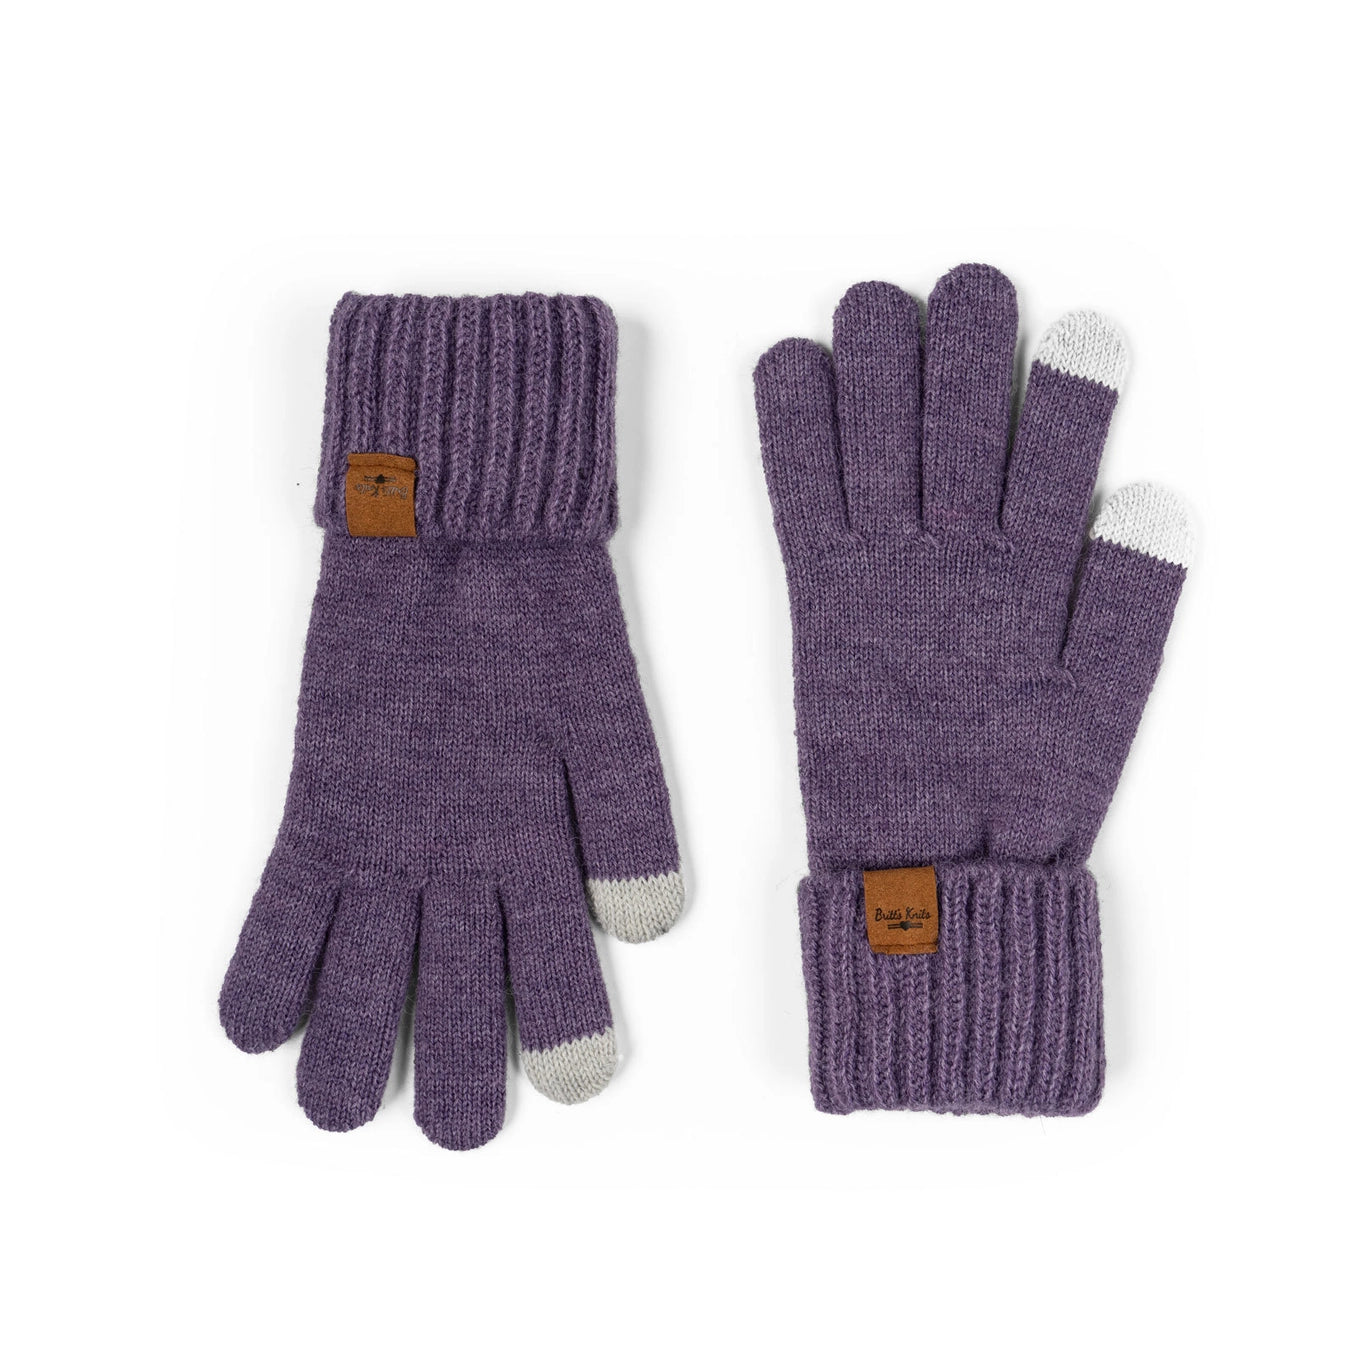 Britt's Knits Mainstay Gloves